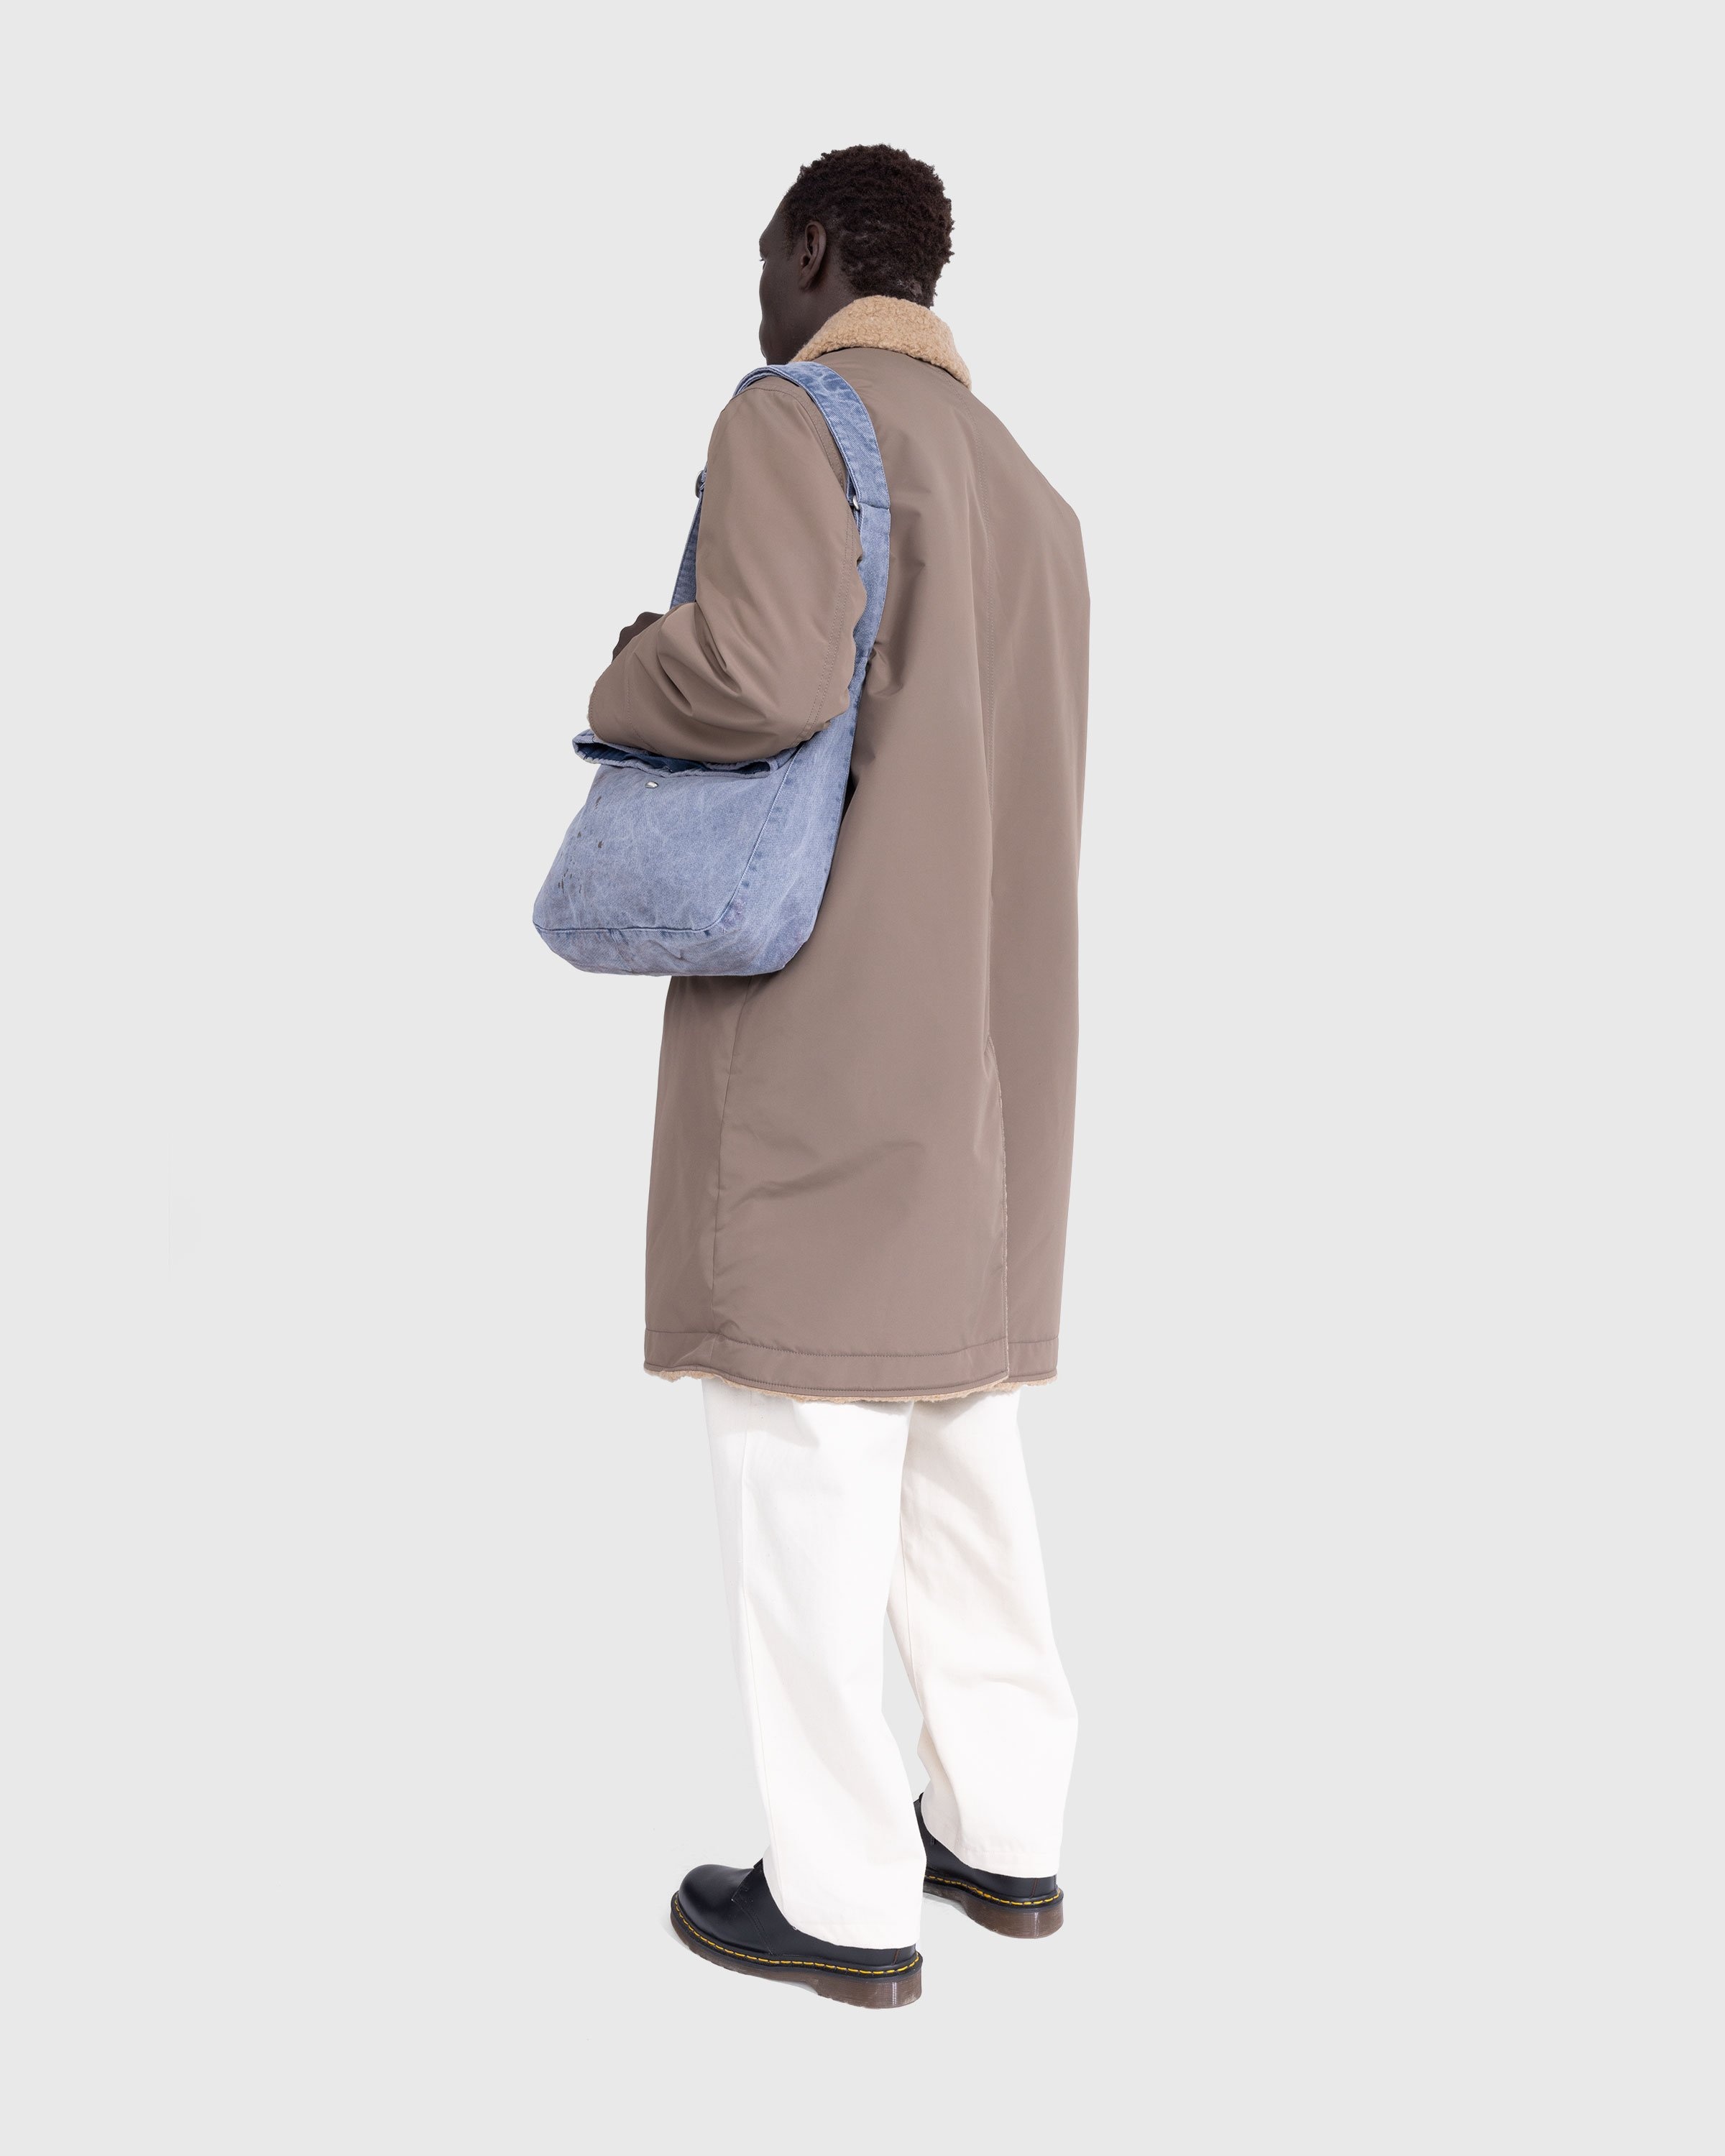 Washed Denim Messenger Bag Minimalist Shoulder Bag High 